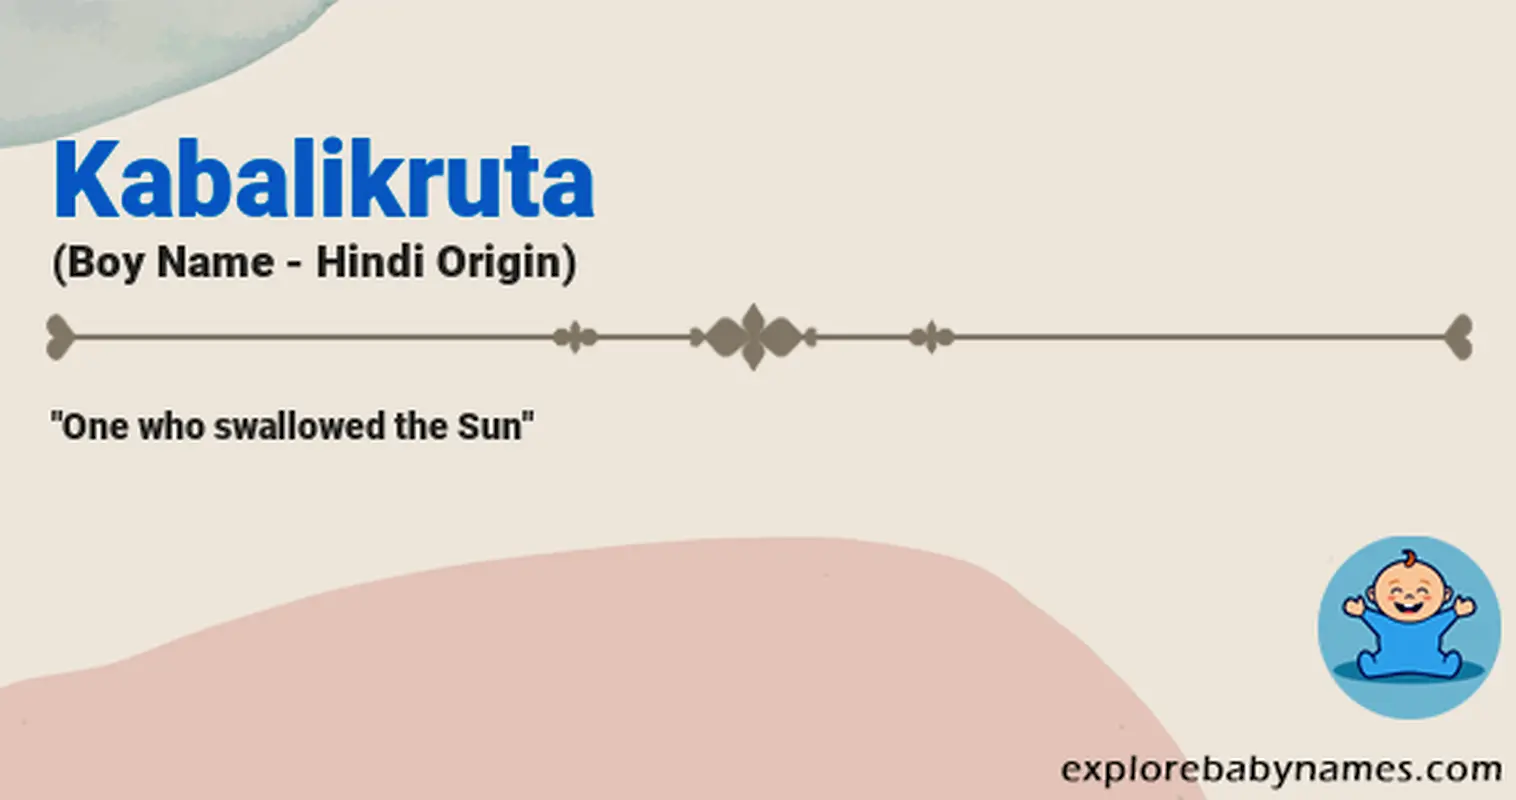 Meaning of Kabalikruta